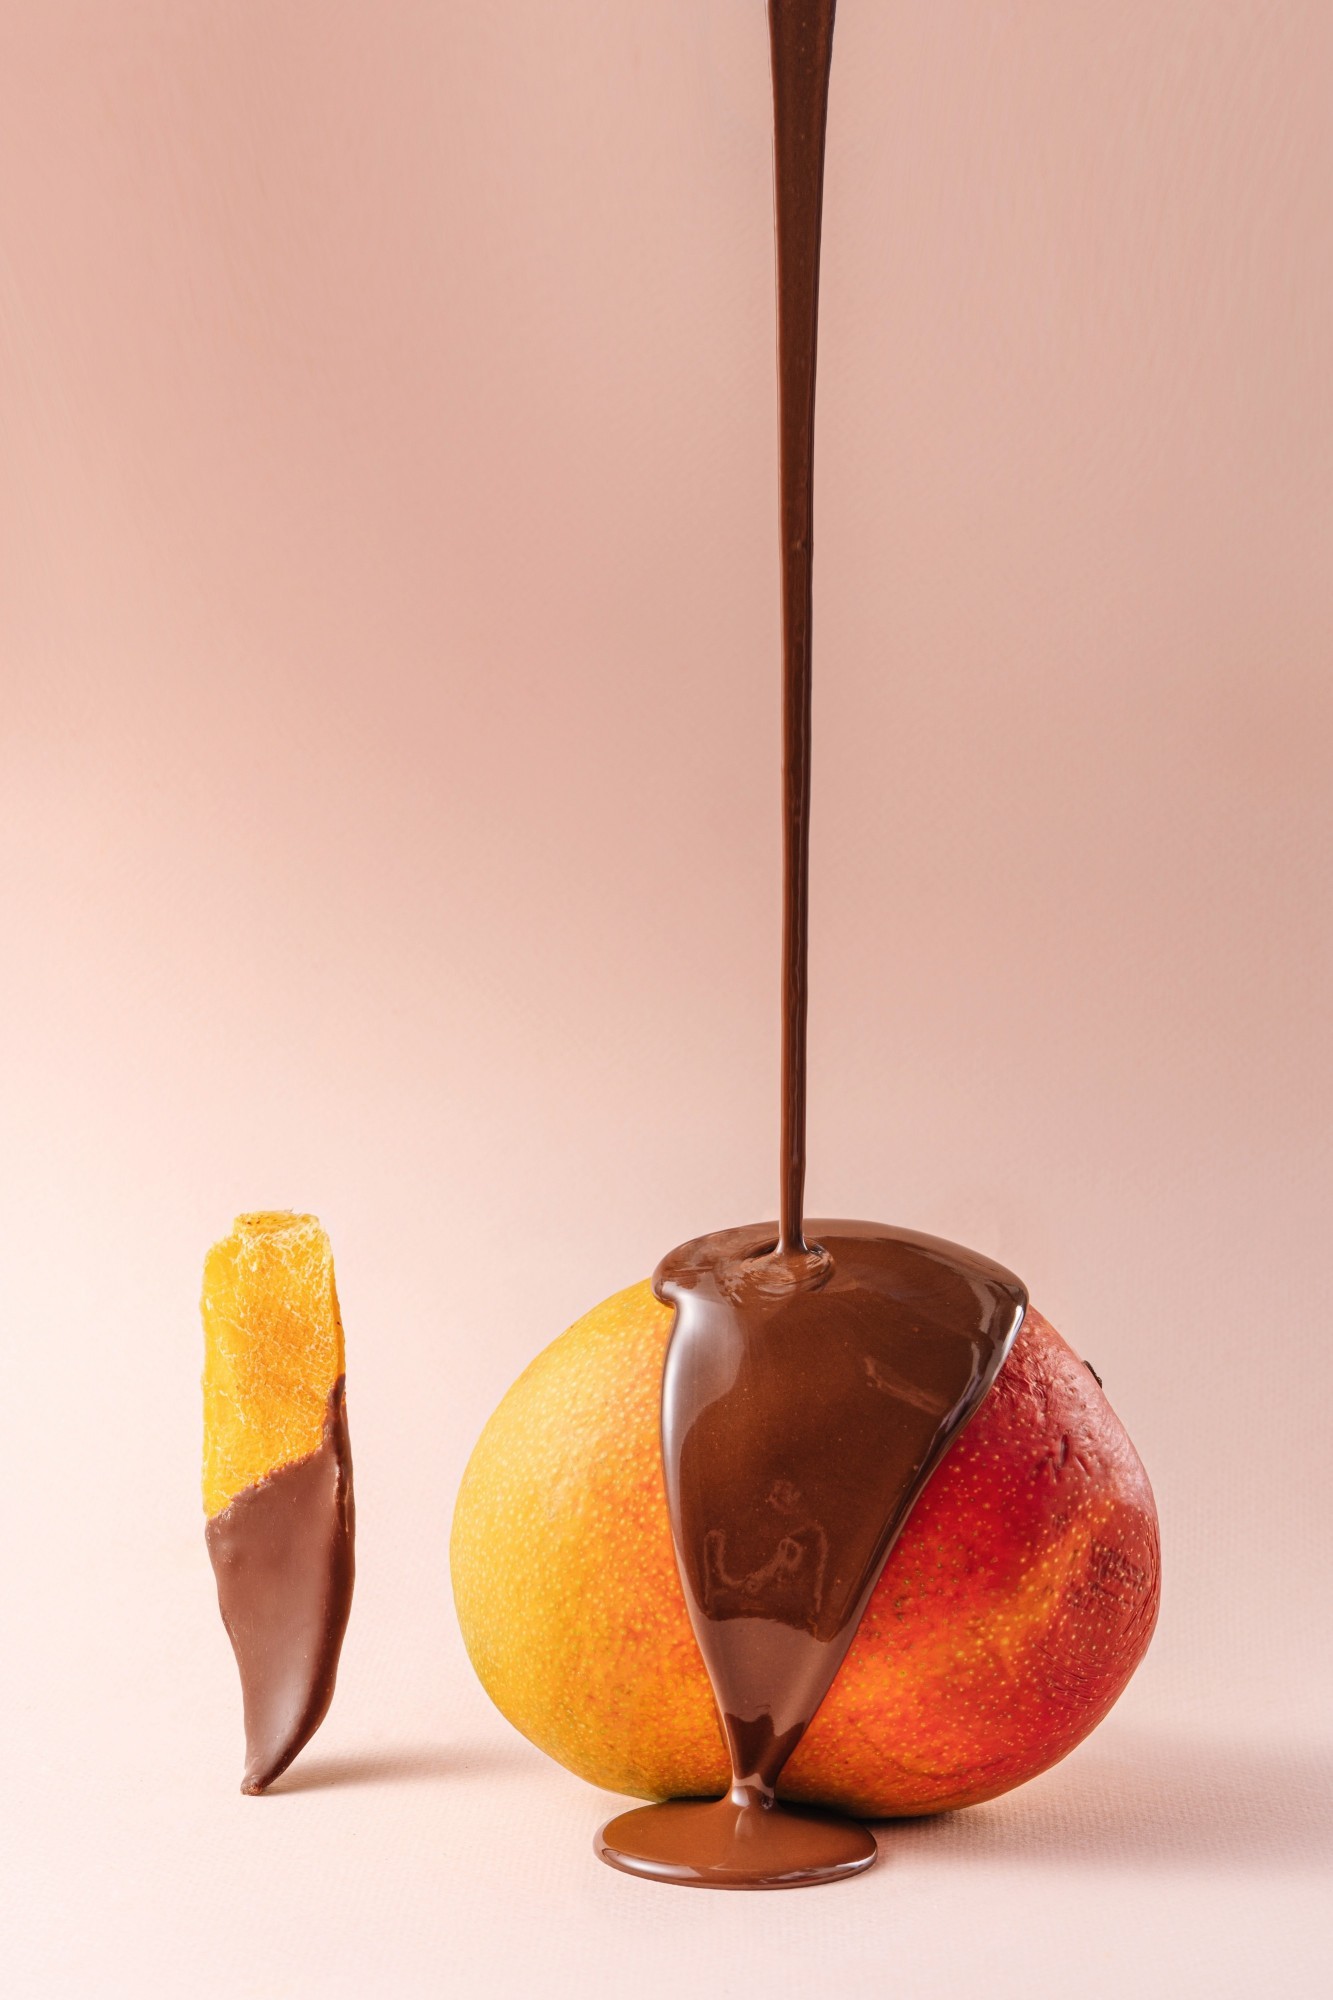 Mango, melon, peach in chocolate "Healthy Choice"